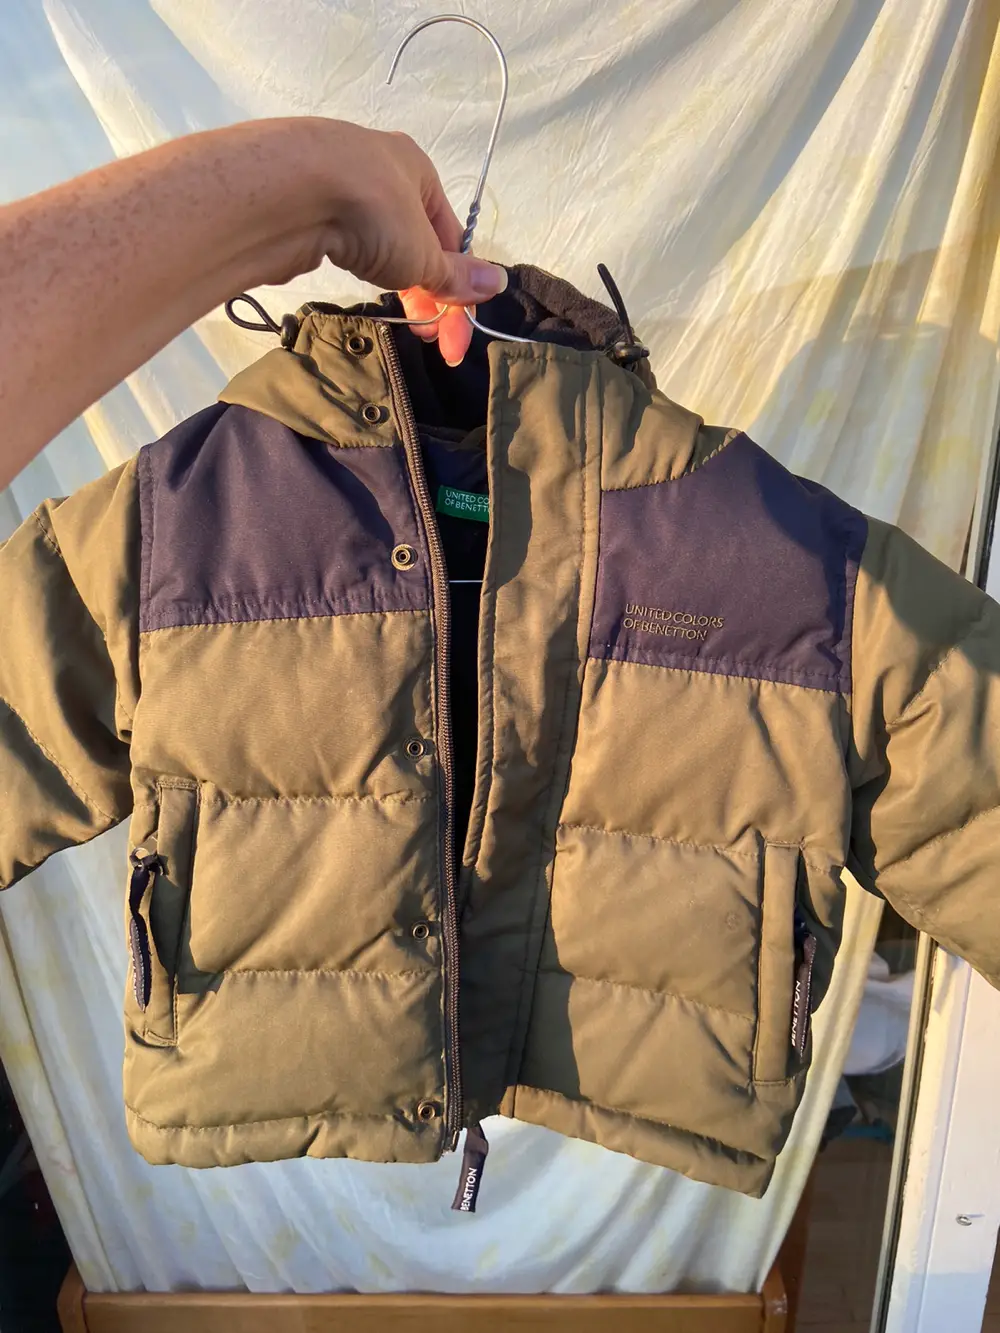 Køb United Colors Benetton Denim Cowboy jakke i størrelse 74 af Sita på Reshopper Shop secondhand til mor og bolig